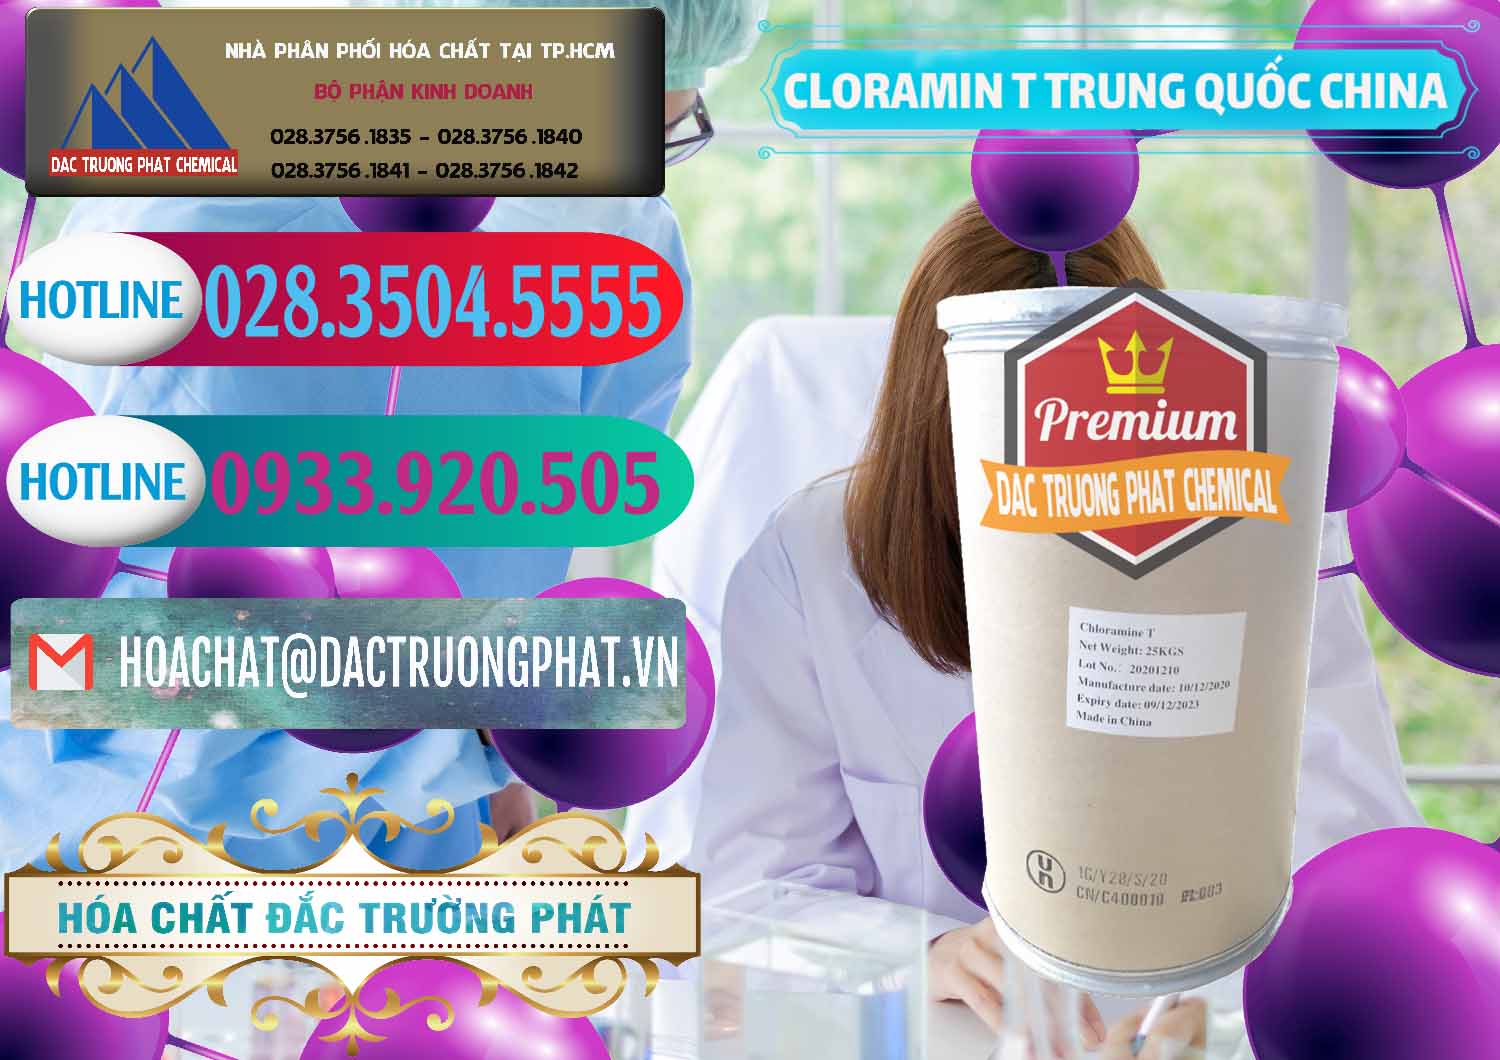 Cty chuyên phân phối và bán Cloramin T Khử Trùng, Diệt Khuẩn Trung Quốc China - 0301 - Đơn vị cung cấp ( phân phối ) hóa chất tại TP.HCM - truongphat.vn